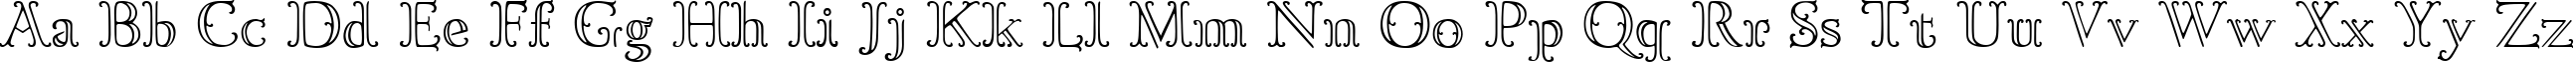 Пример написания английского алфавита шрифтом Goudy OrnateC